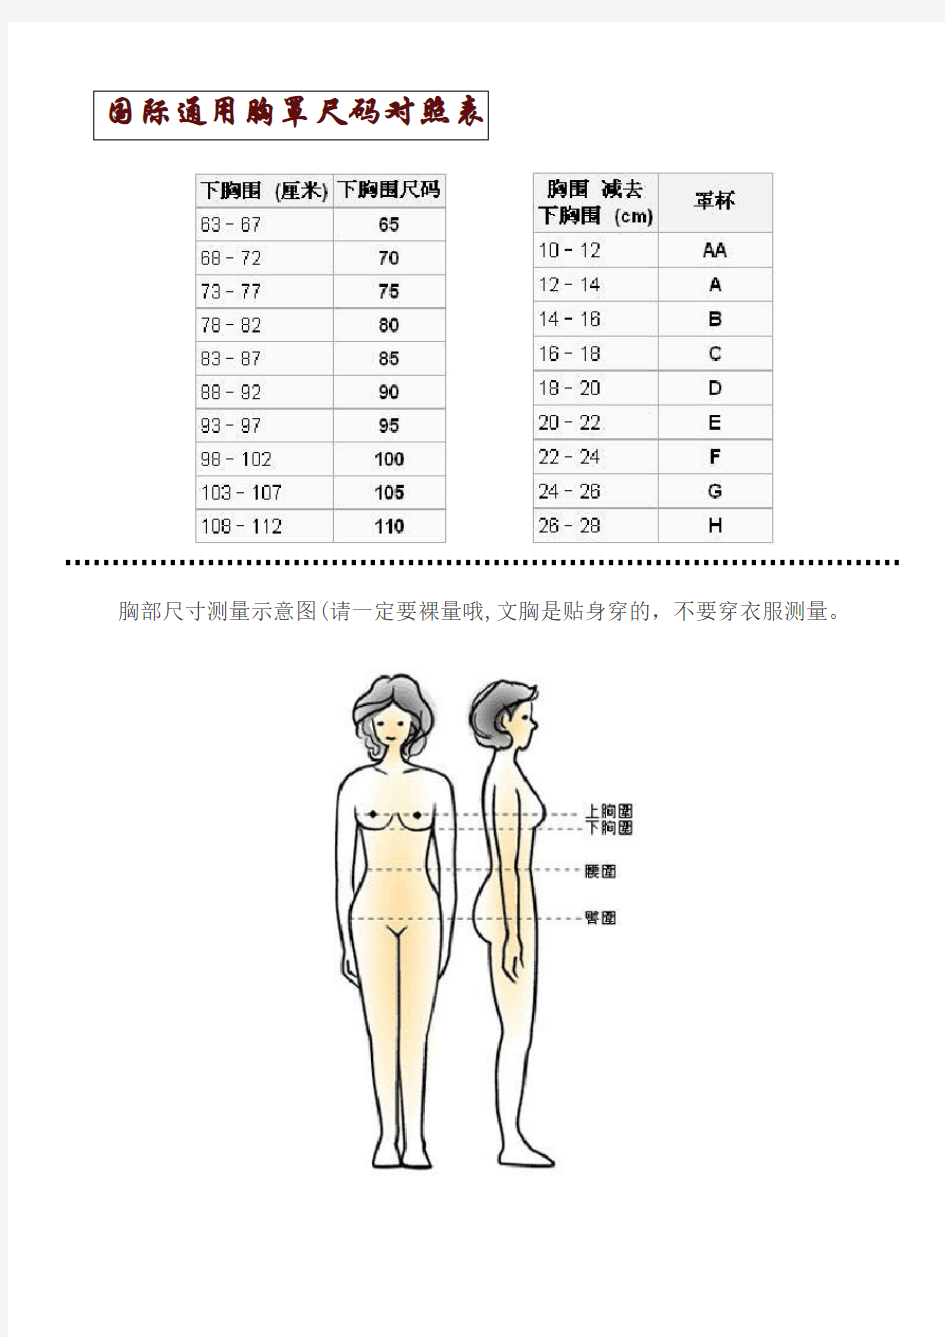 国际通用胸罩尺码对照表-及其他